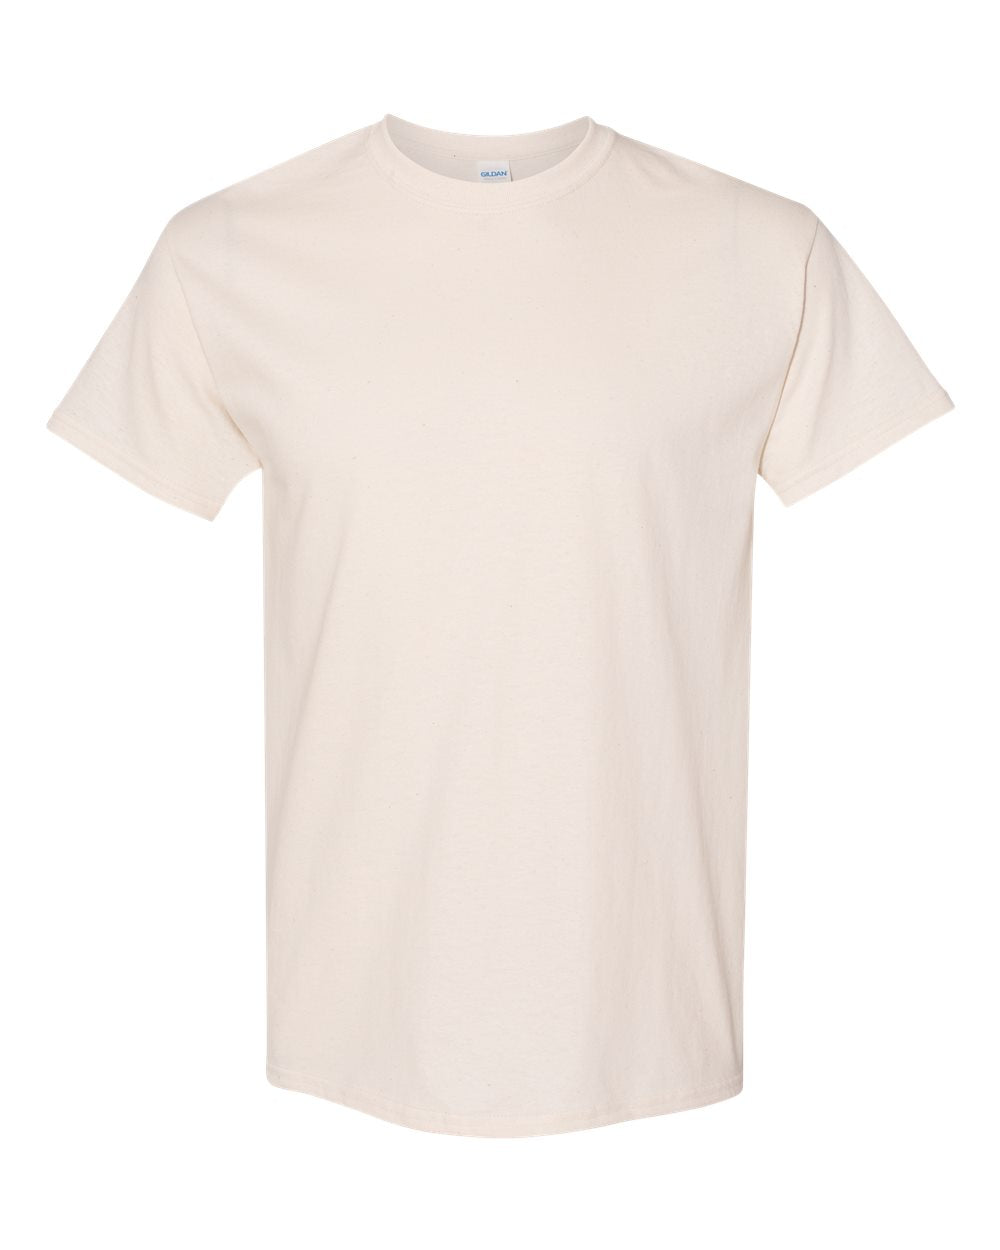 Gildan 5000 Adult Shirt - Large